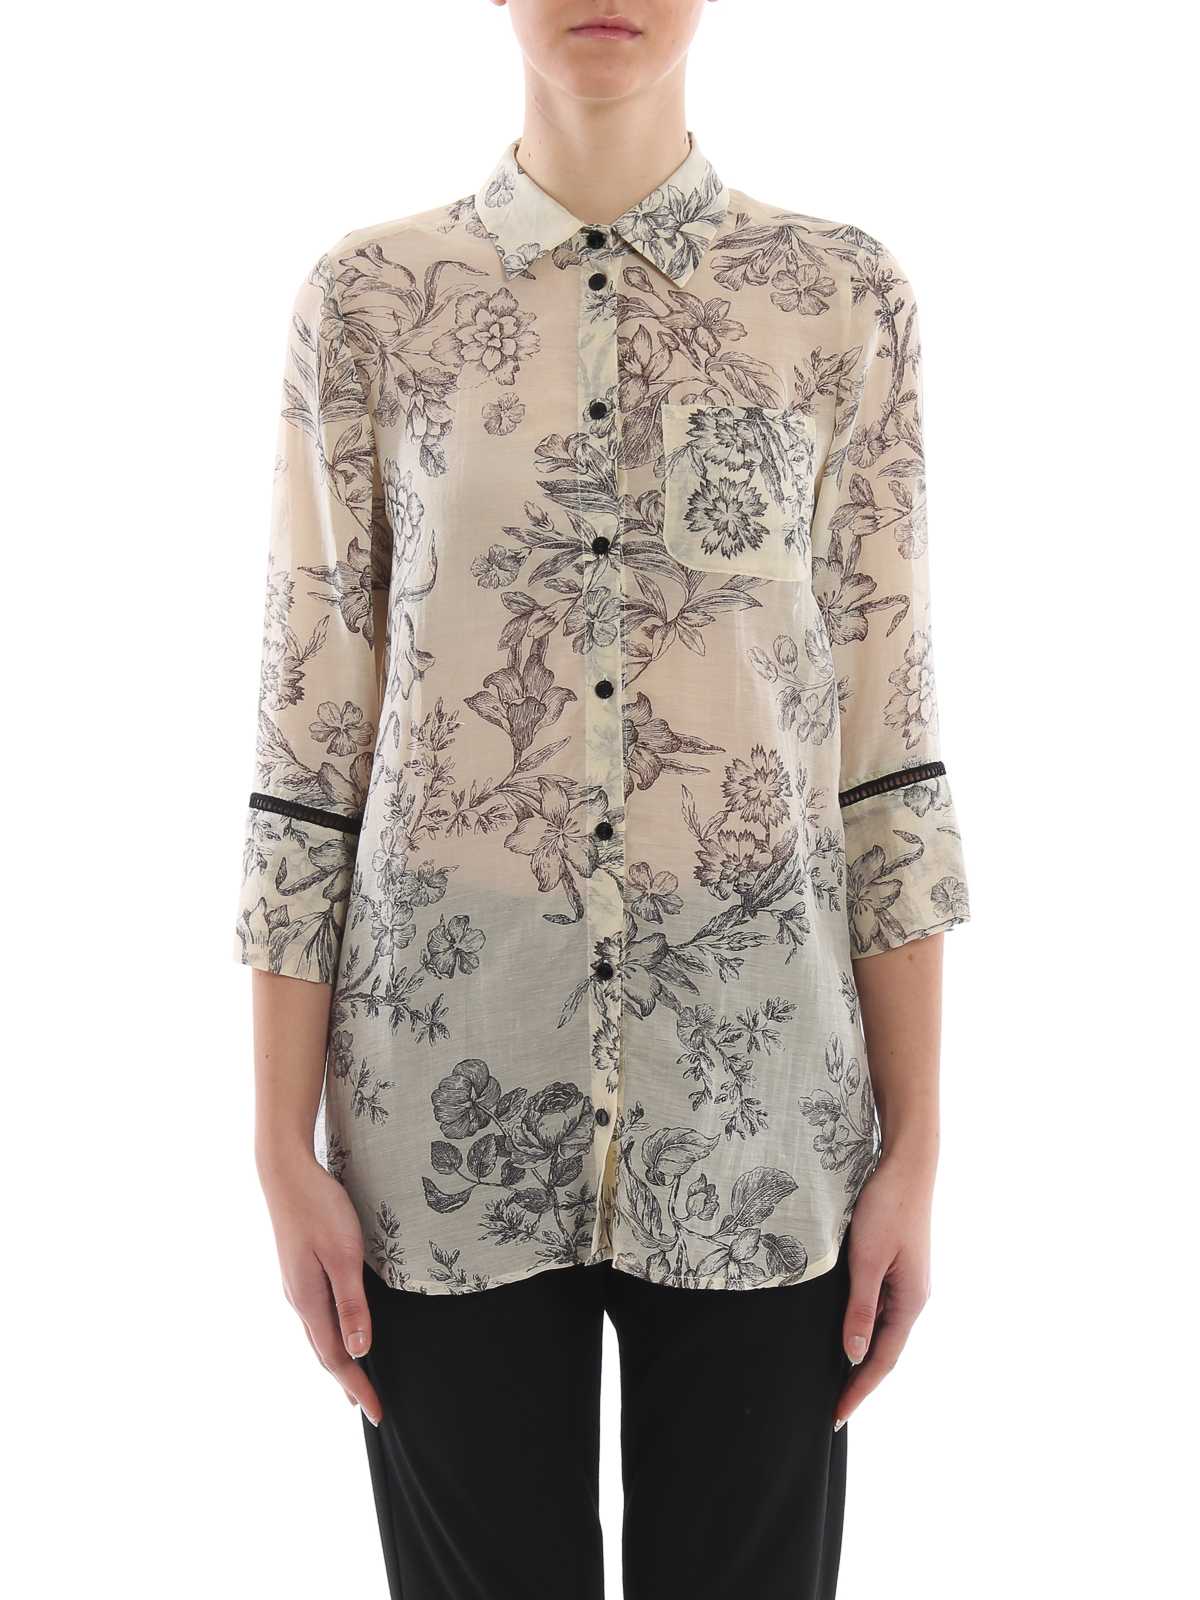 Shirts Twinset - Toile de Jouy silk blend shirt - 191TT24013804